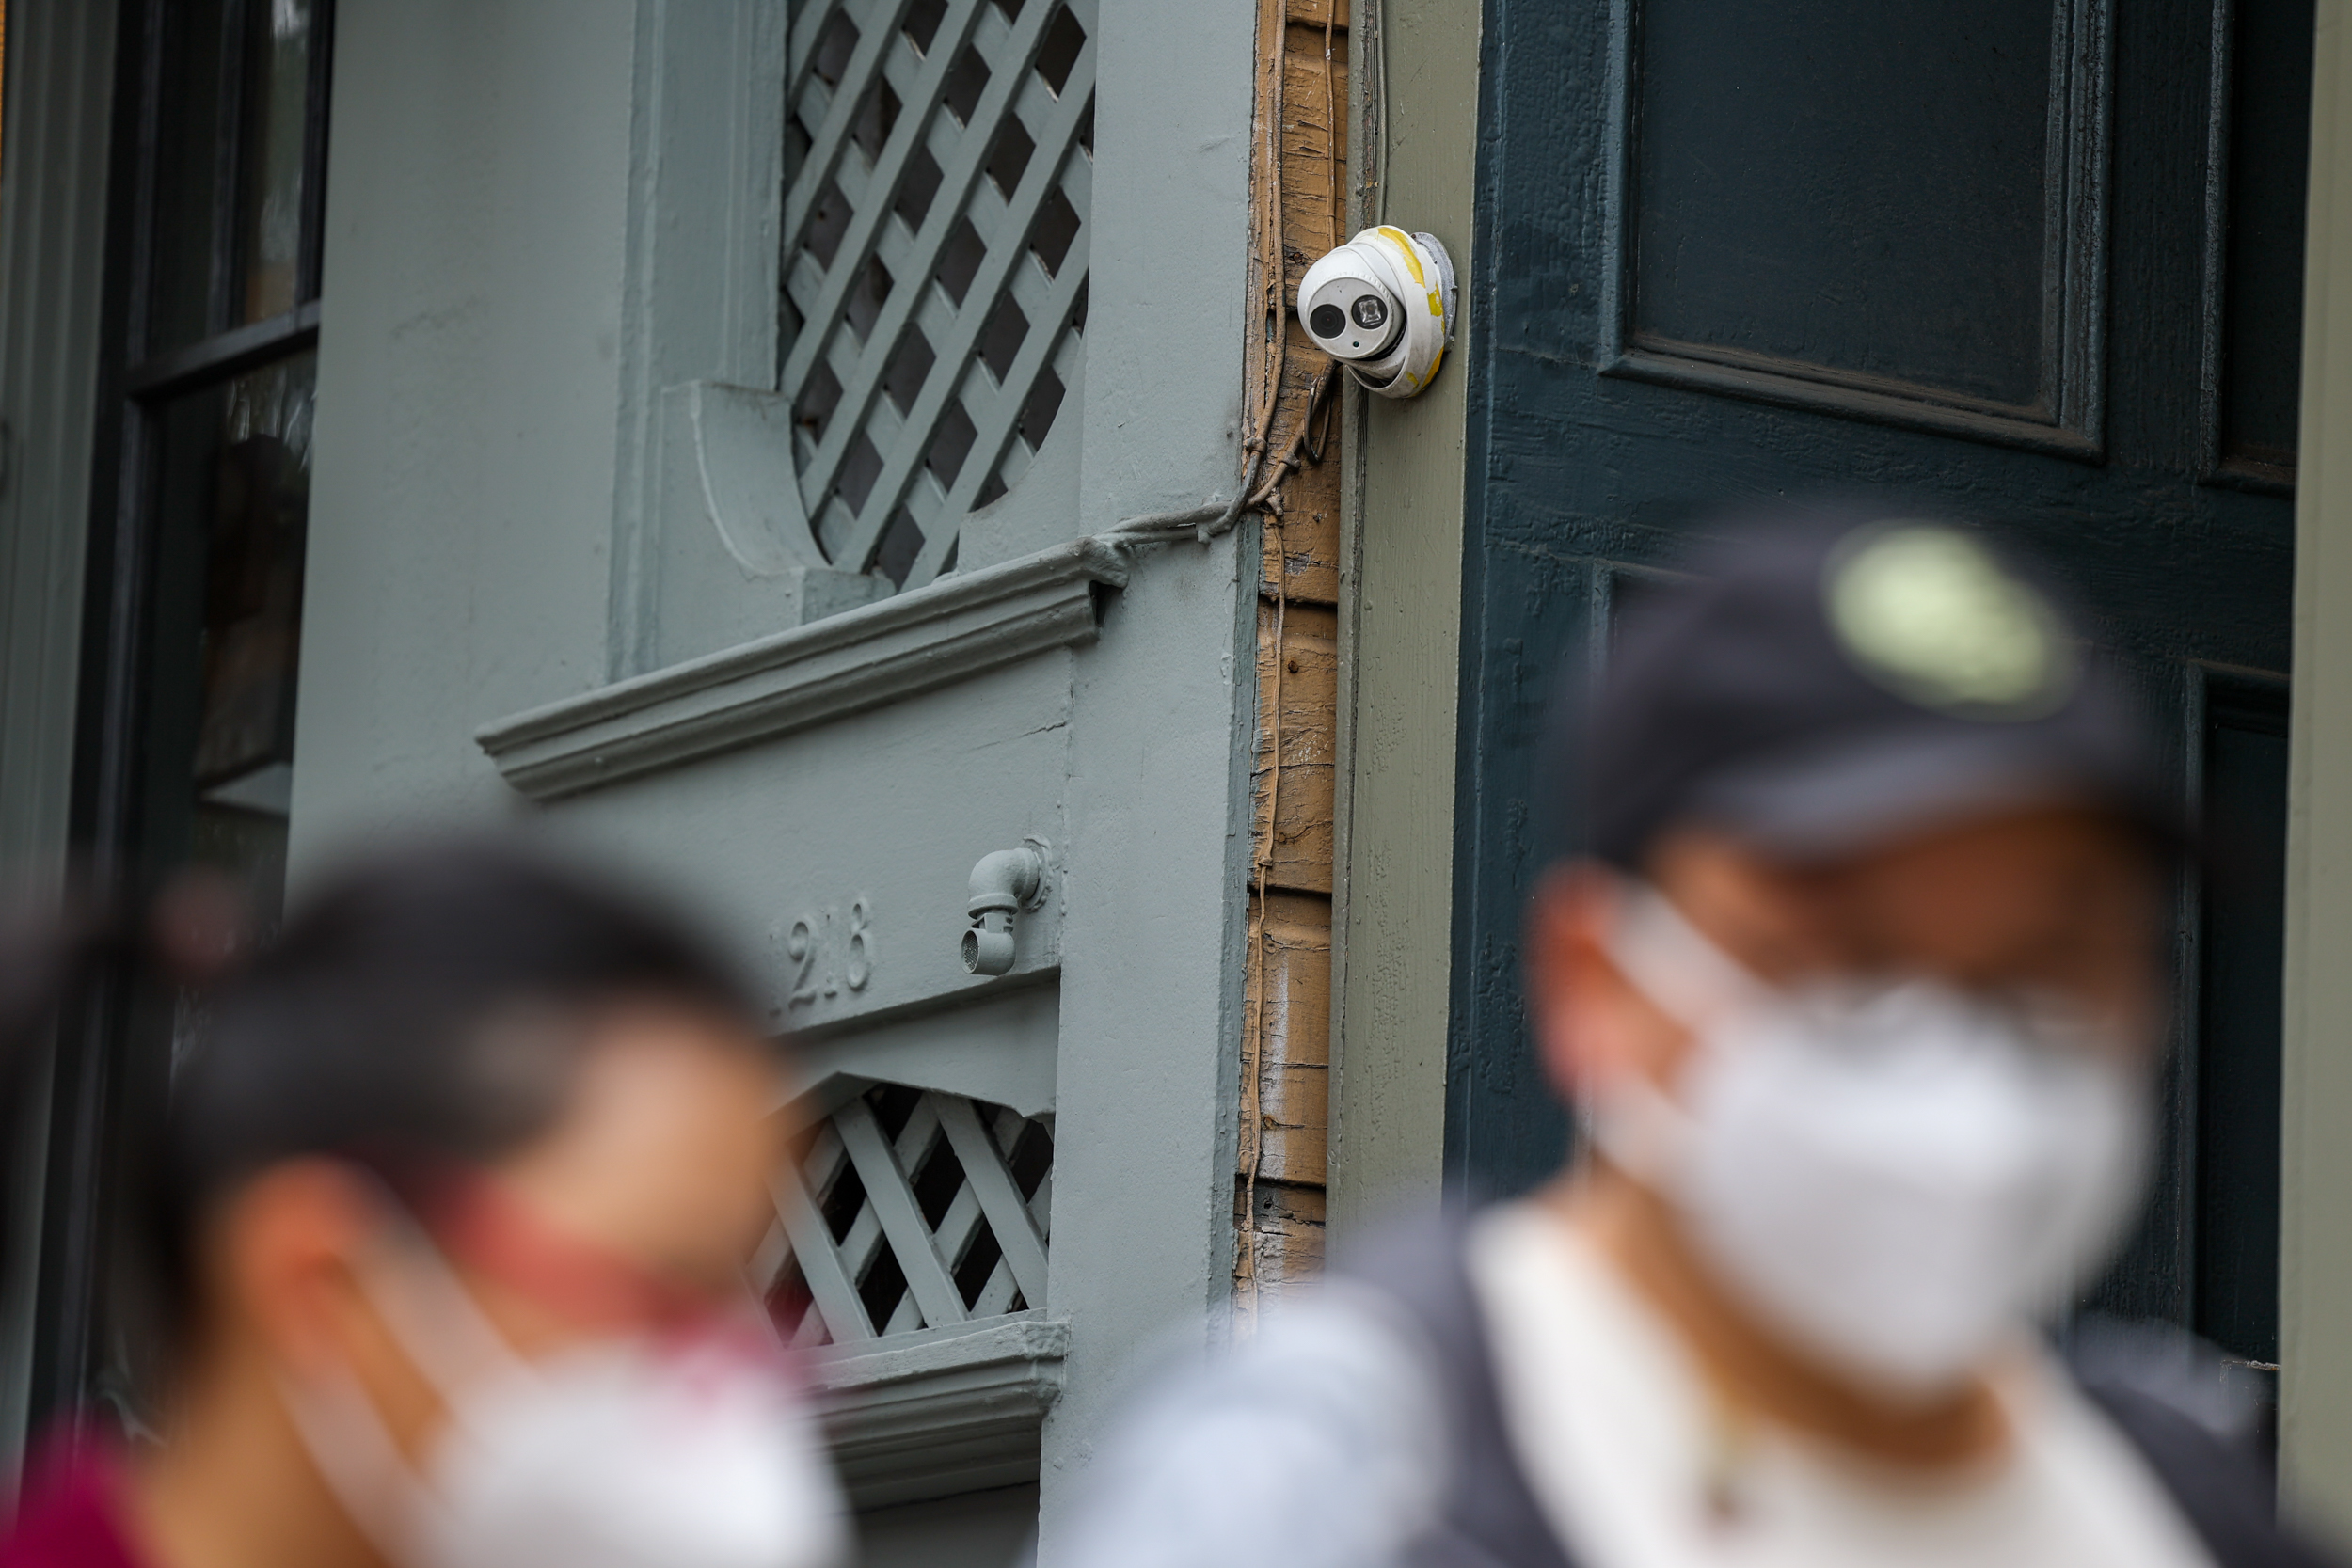 暴力袭击视频疯传 华人社区支持加装监控摄像